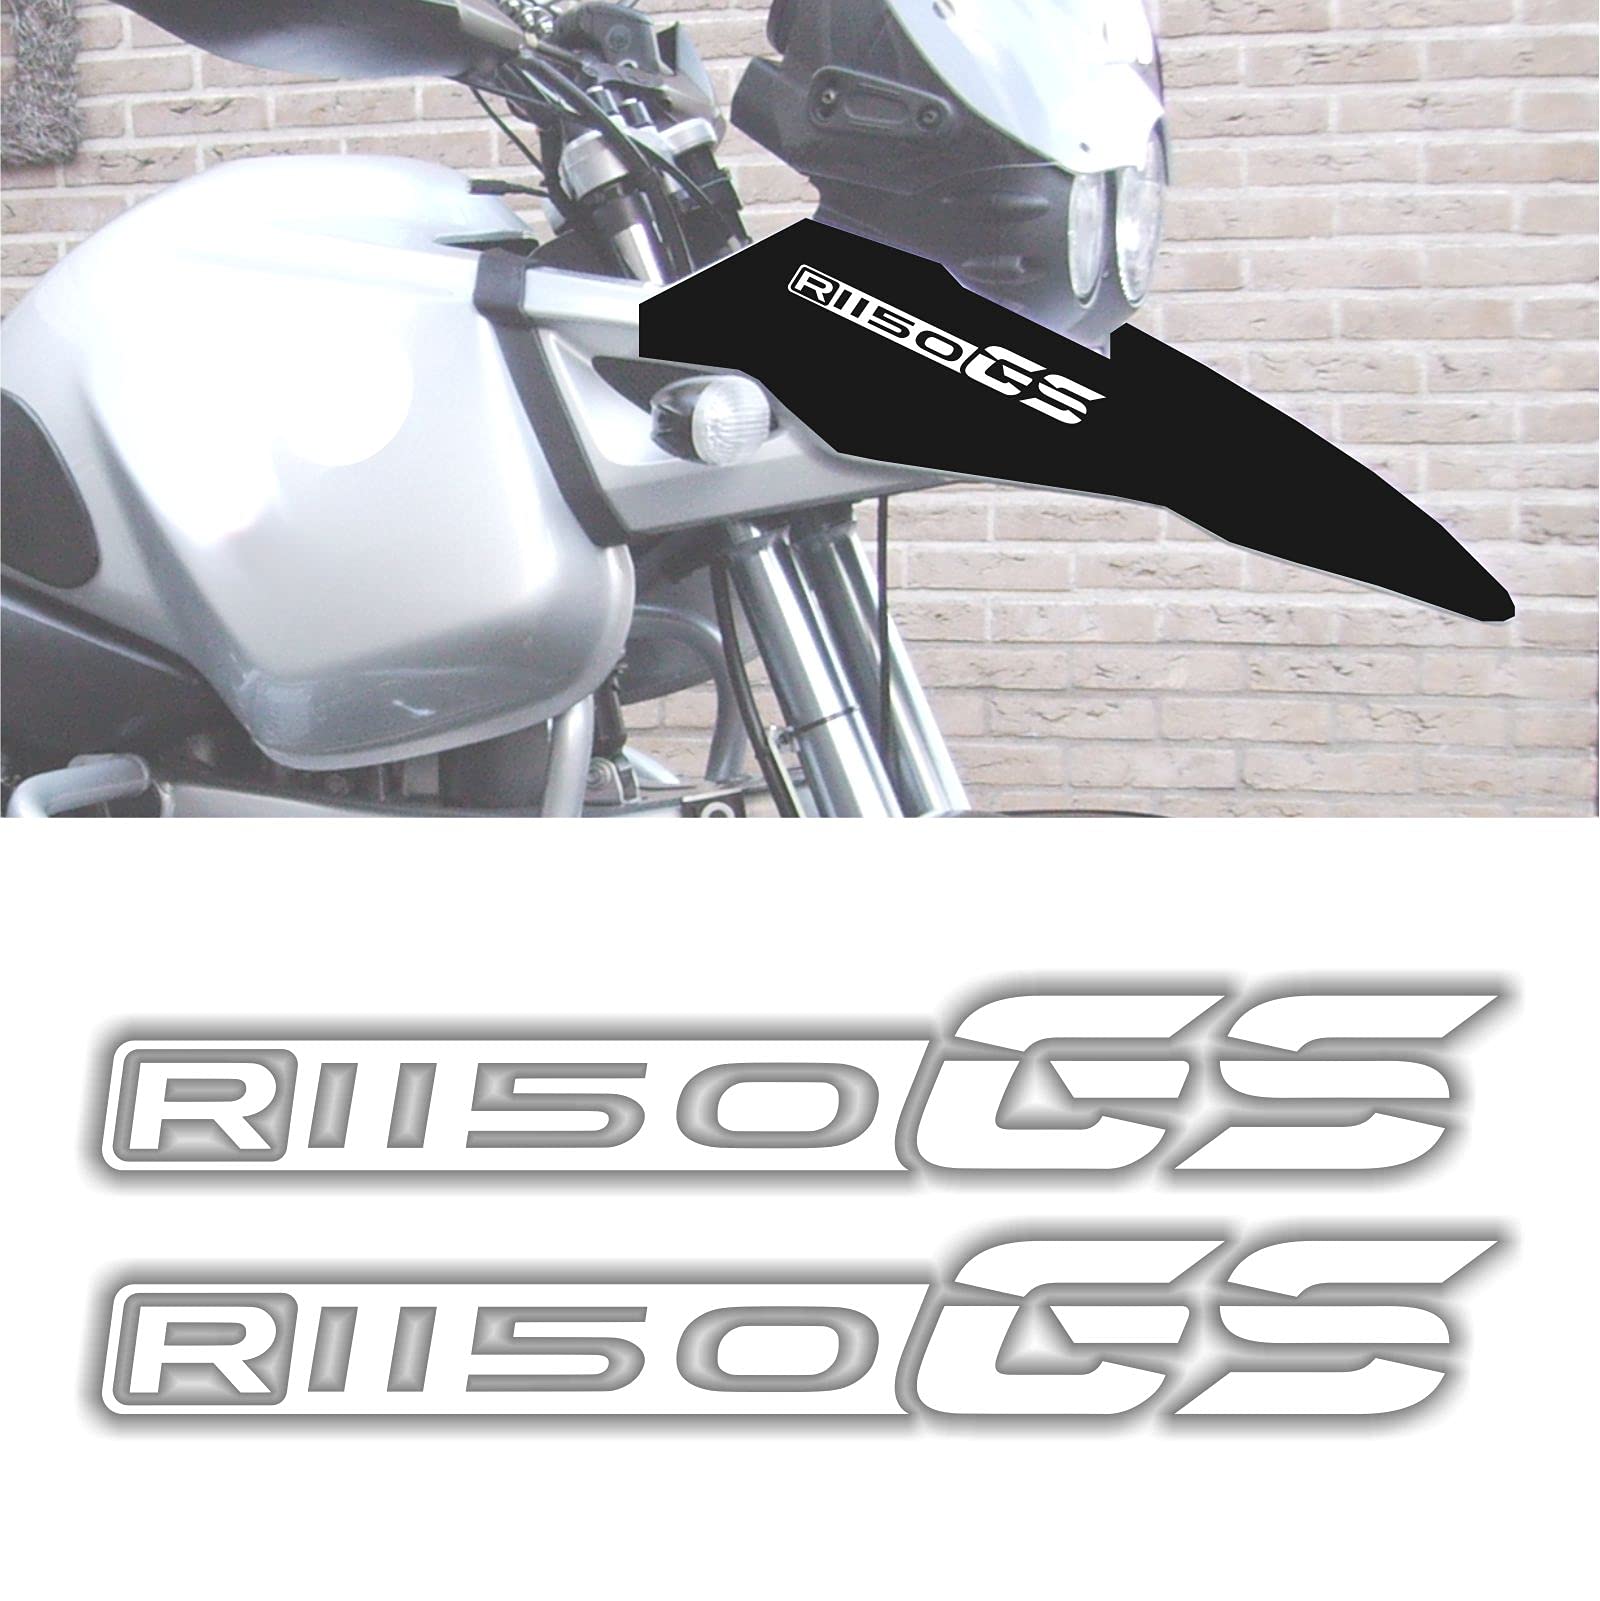 2pcs Aufkleber kompatibel für Motorrad R1150 GS BMW Motorrad R 1150 r1150gs (White) von Black Doves Graphics